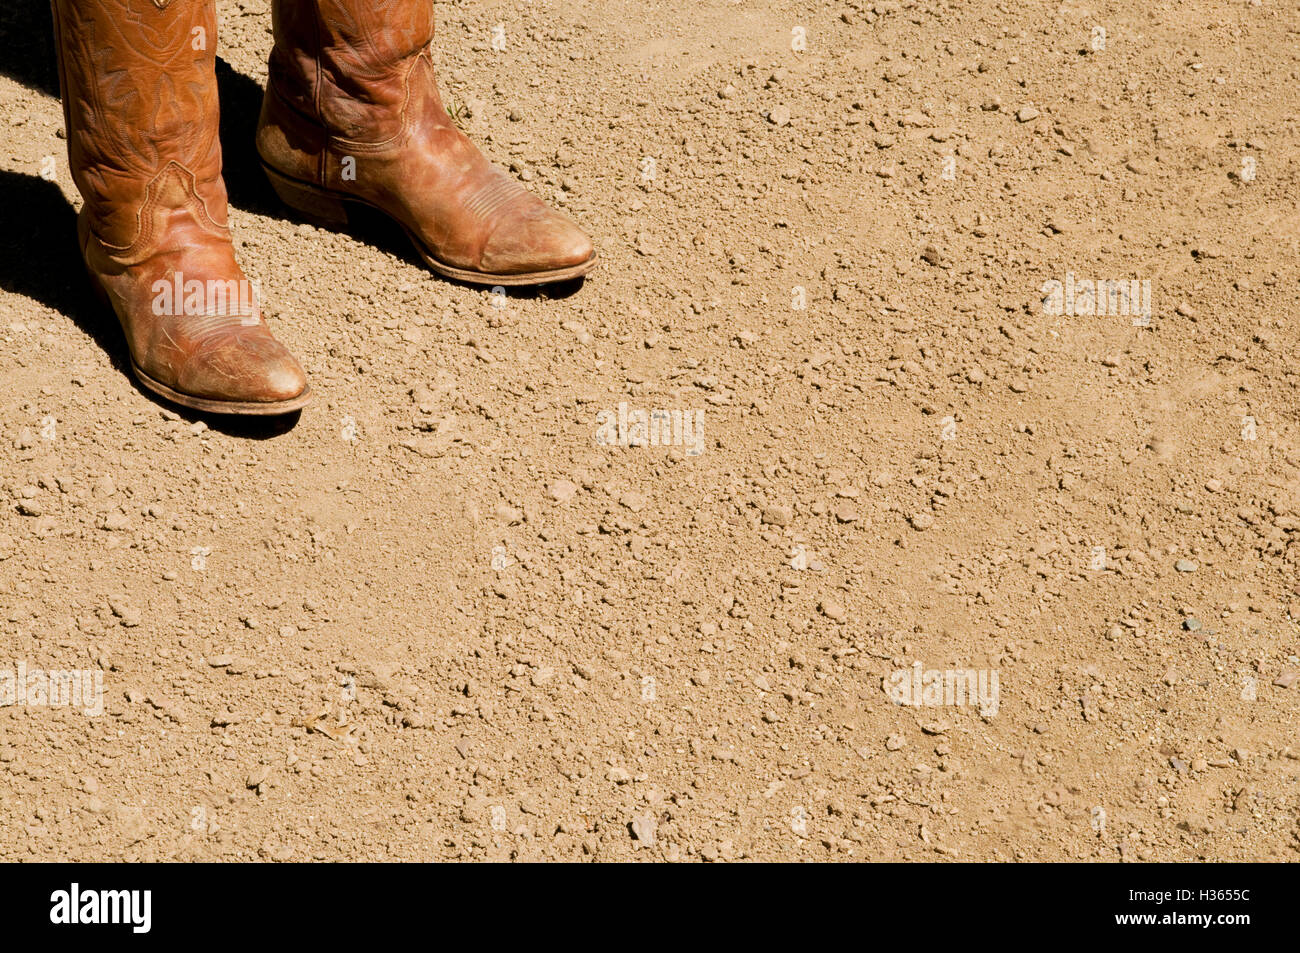 Deux western sales bottes de cow-boy debout sur sol de terre sèche Banque D'Images